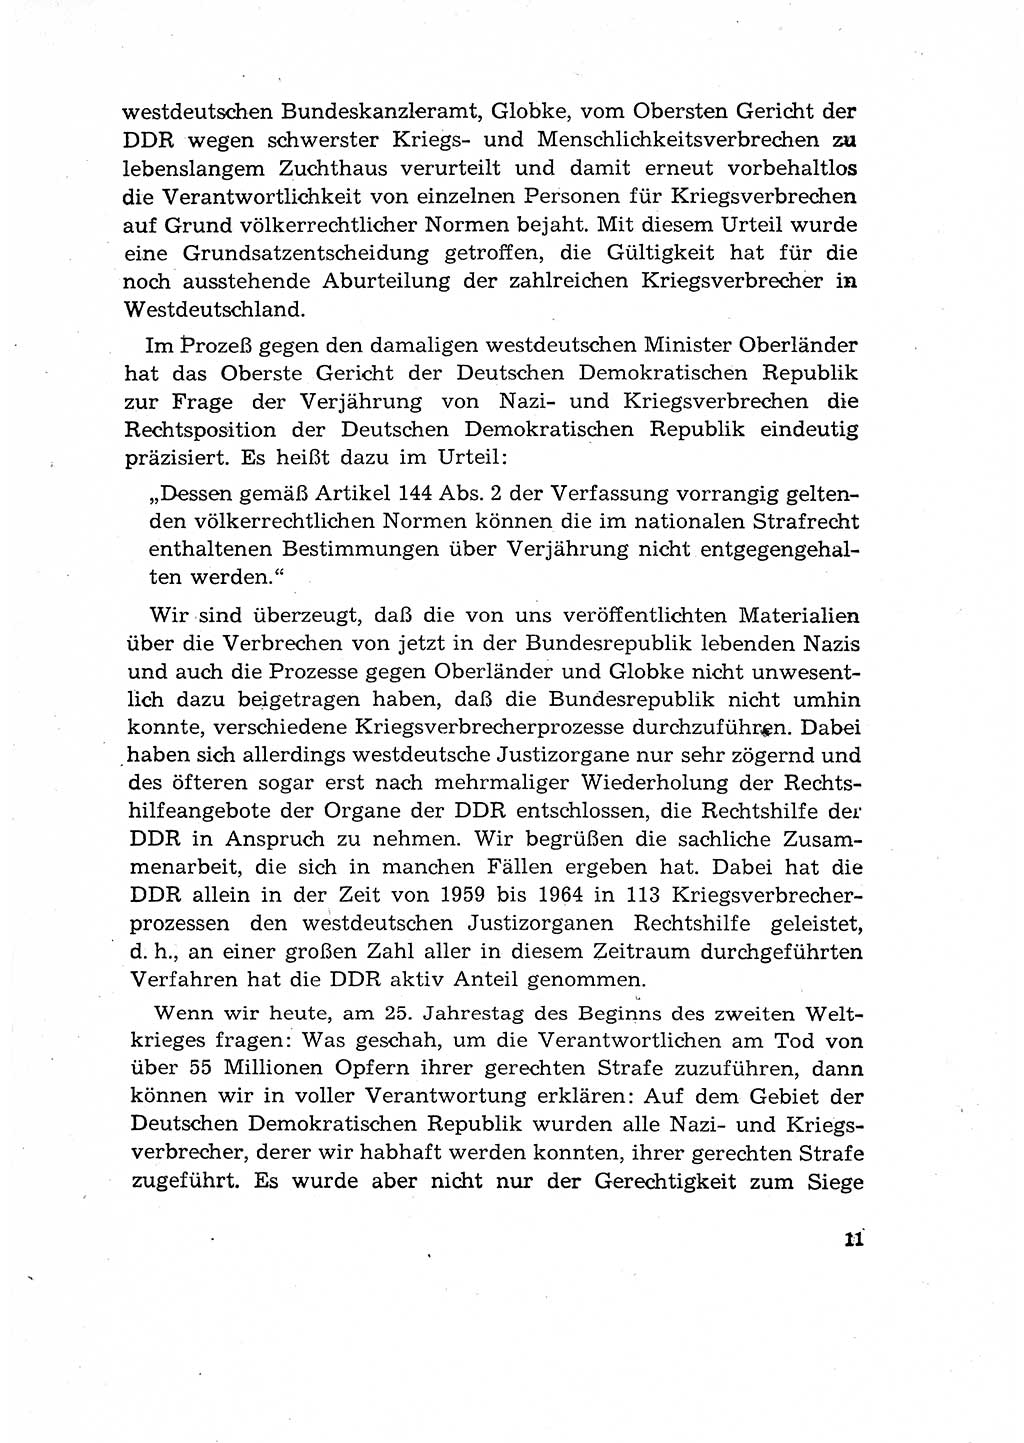 Bestrafung der Nazi- und Kriegsverbrecher [Deutsche Demokratische Republik (DDR)] 1964, Seite 11 (Bestr. Nazi-Kr.-Verbr. DDR 1964, S. 11)